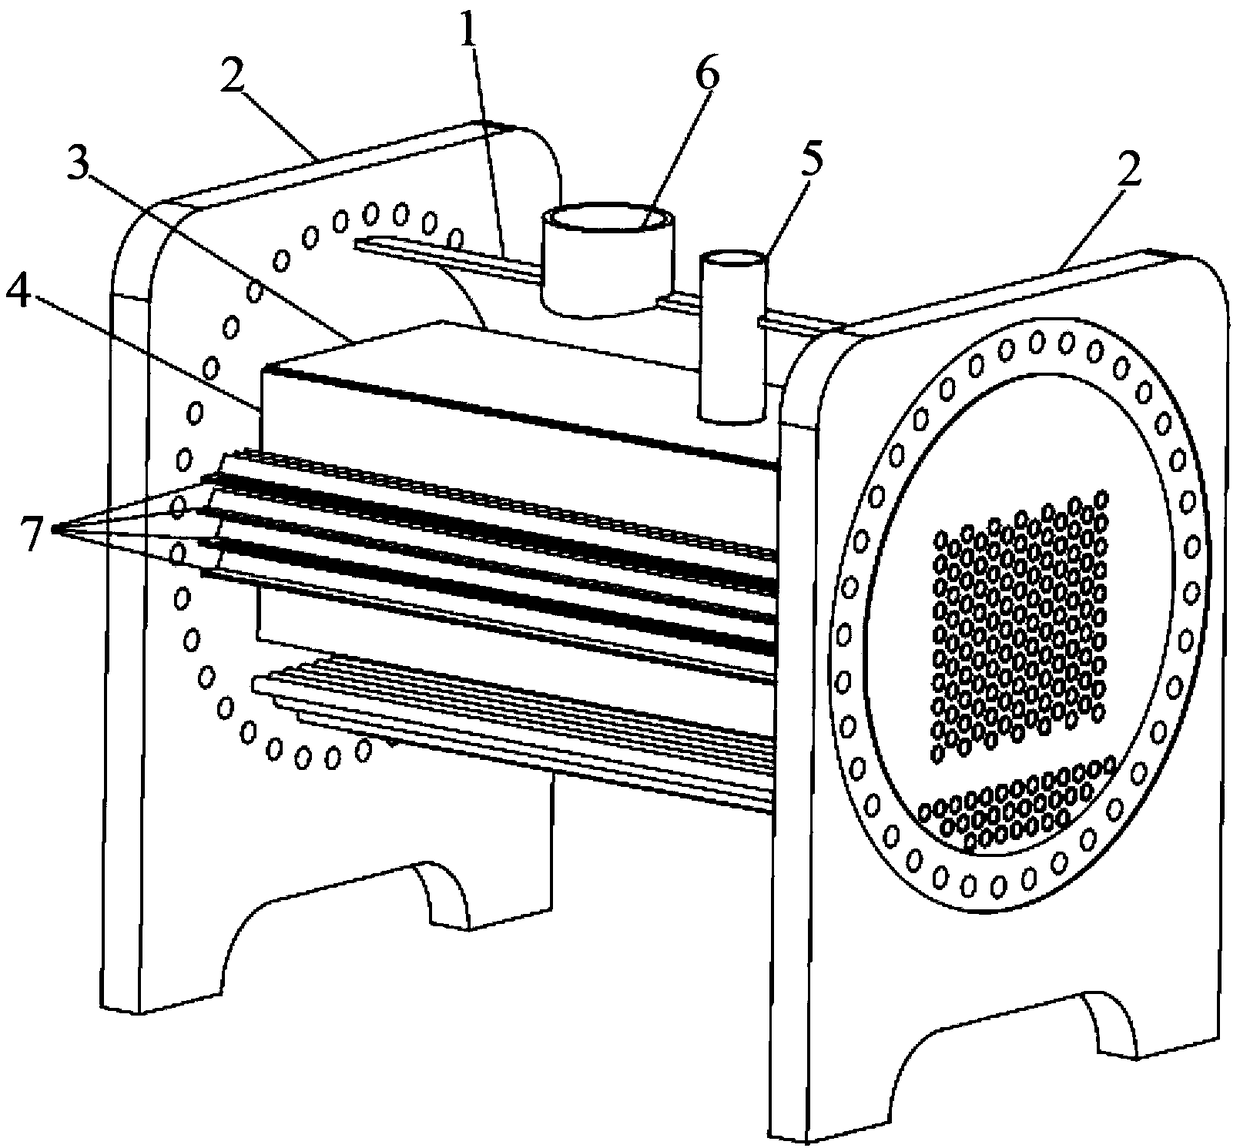 Falling-film type evaporator and air conditioner